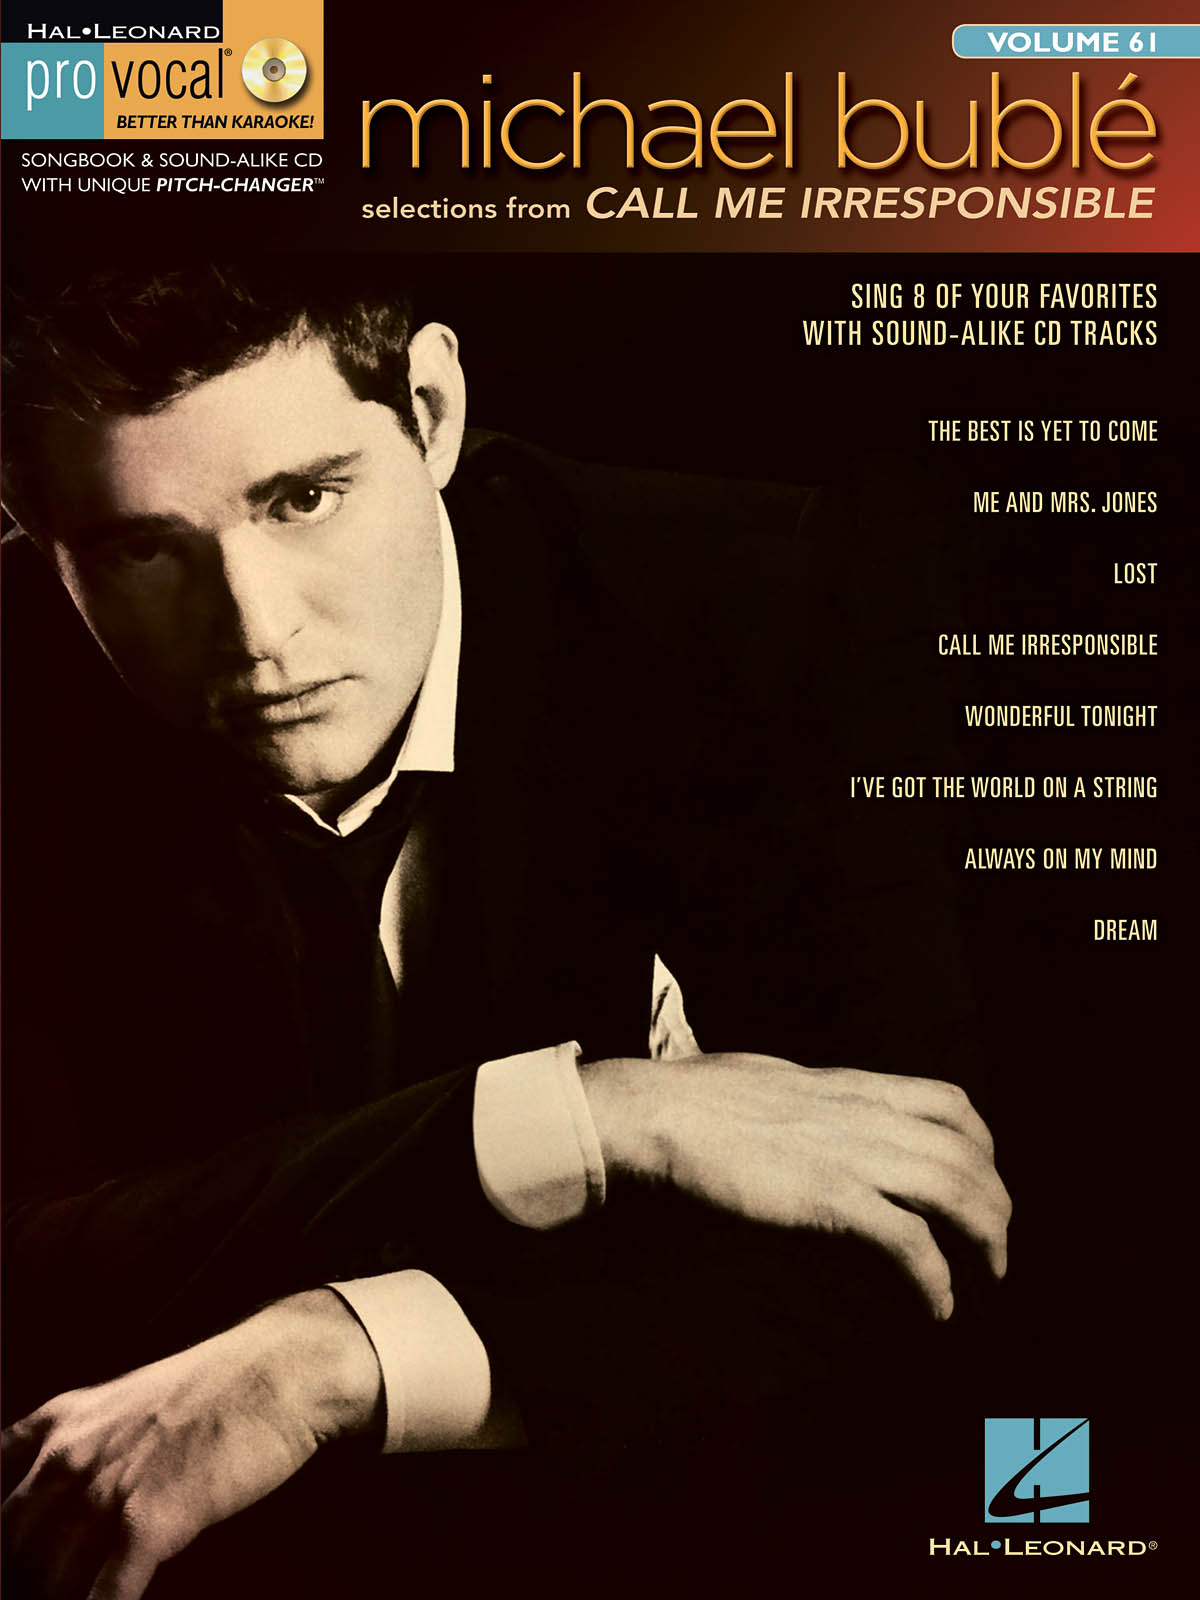 Michael Bublé - Call Me Irresponsible - Pro Vocal Men's Edition Volume 61 - písně pro zpěv, klavír s akordy pro kytaru